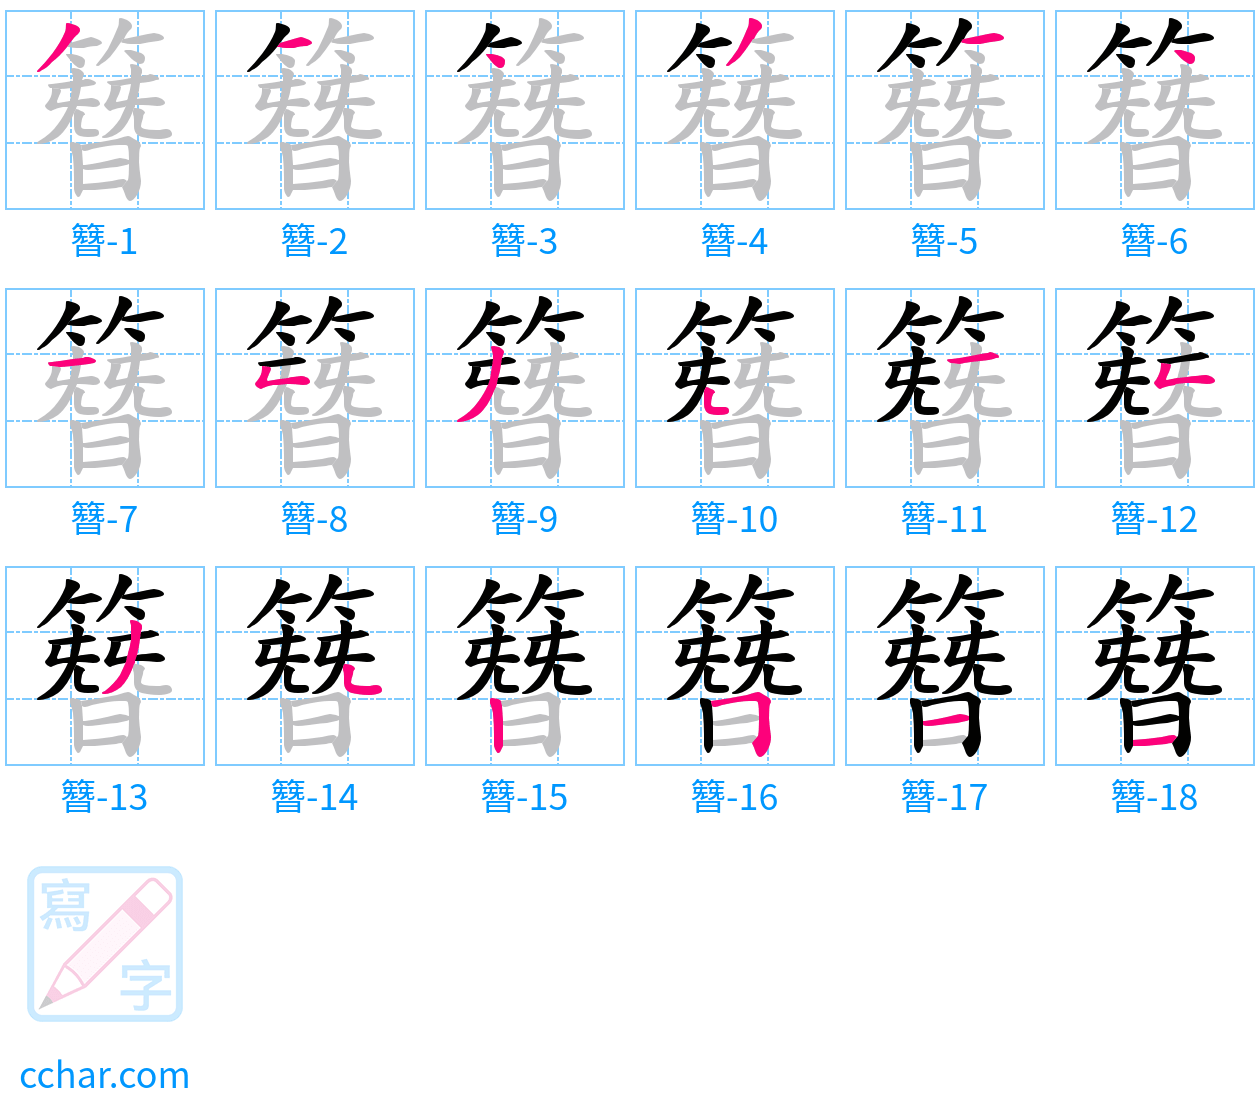 簪 stroke order step-by-step diagram